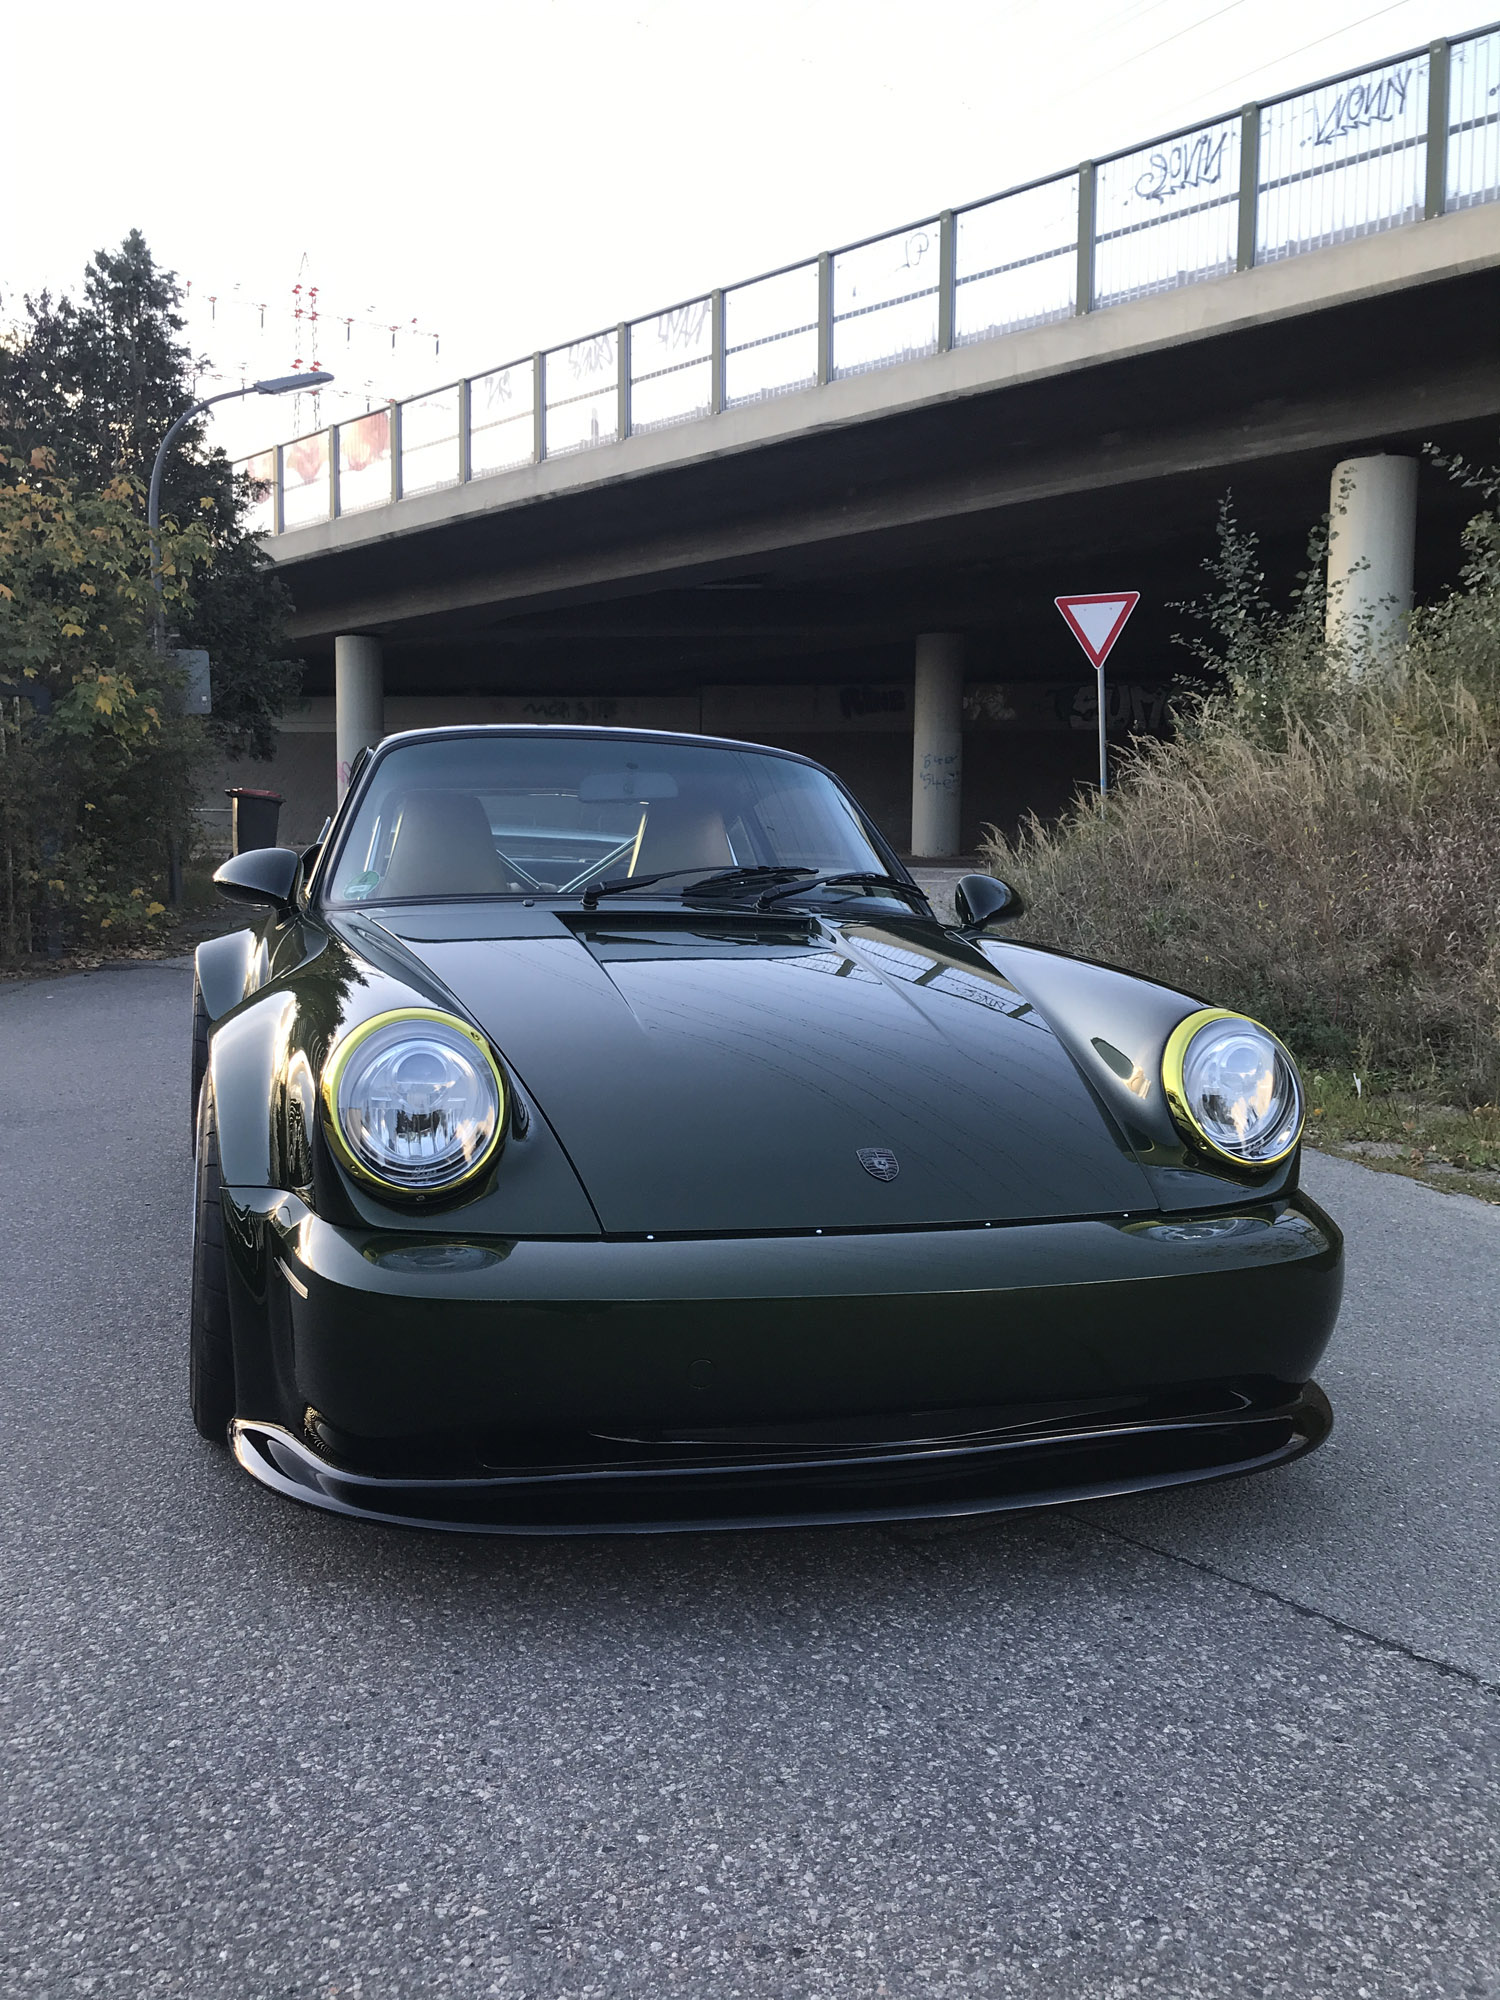 Окончательный результат просто потрясающий - обновленный Porsche демонстрирует чистое зеленое покрытие с желтыми акцентами. Хотя это стандартная цветовая схема, команда дизайнеров сумела преподнести ее довольно элегантно и необычно. Наслаждайтесь!